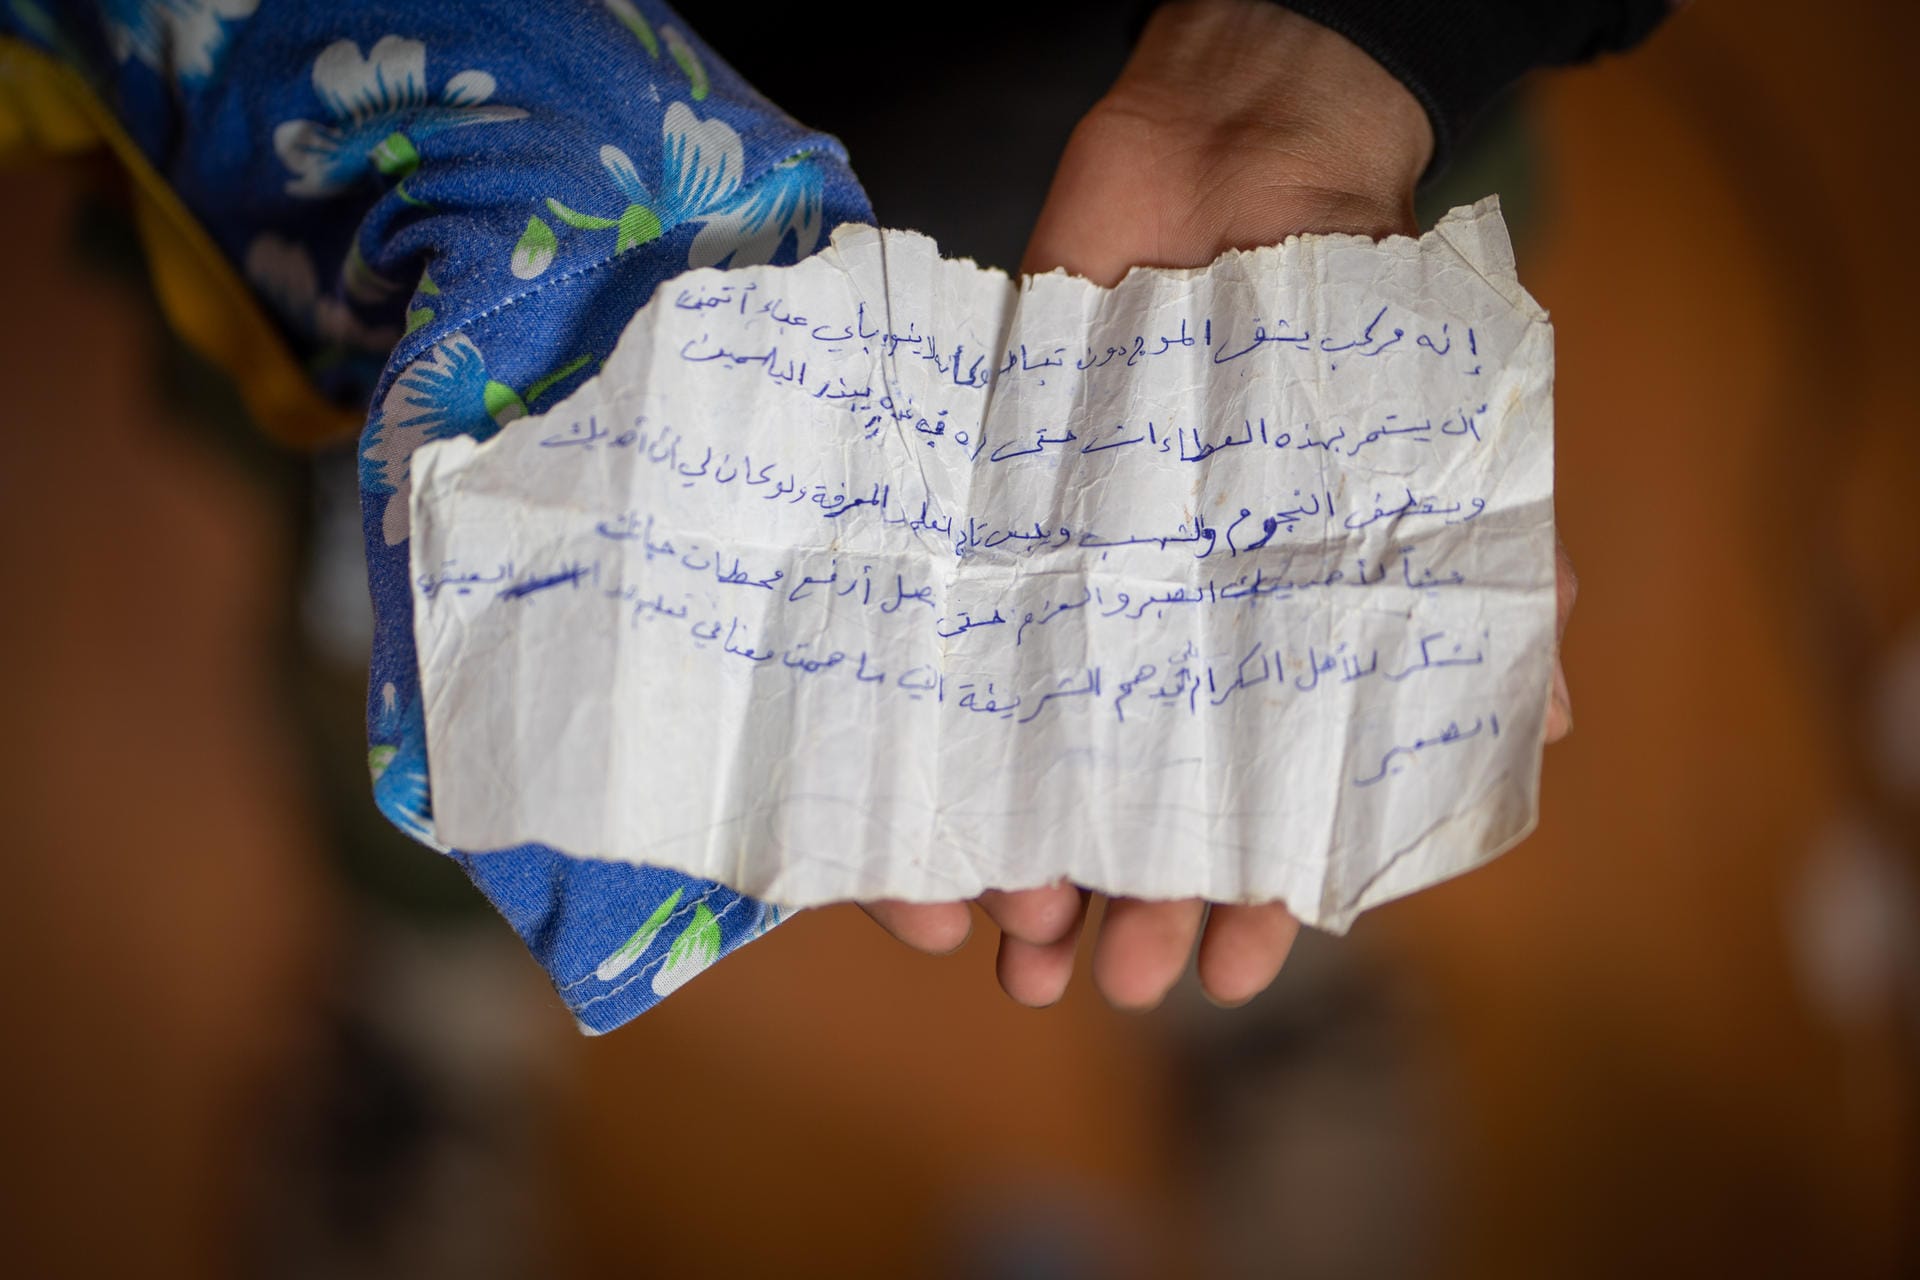 Auf diesem handgeschriebenen Zettel wird der heute 14-jährige Hamza als besonders guter Schüler bezeichnet. Hamza erhielt die Notiz von seinem Lehrer in Syrien. "Es ist wichtig für mich, den Zettel zu behalten, weil er mich daran erinnert, dass ich der beste Schüler meiner Klasse war."